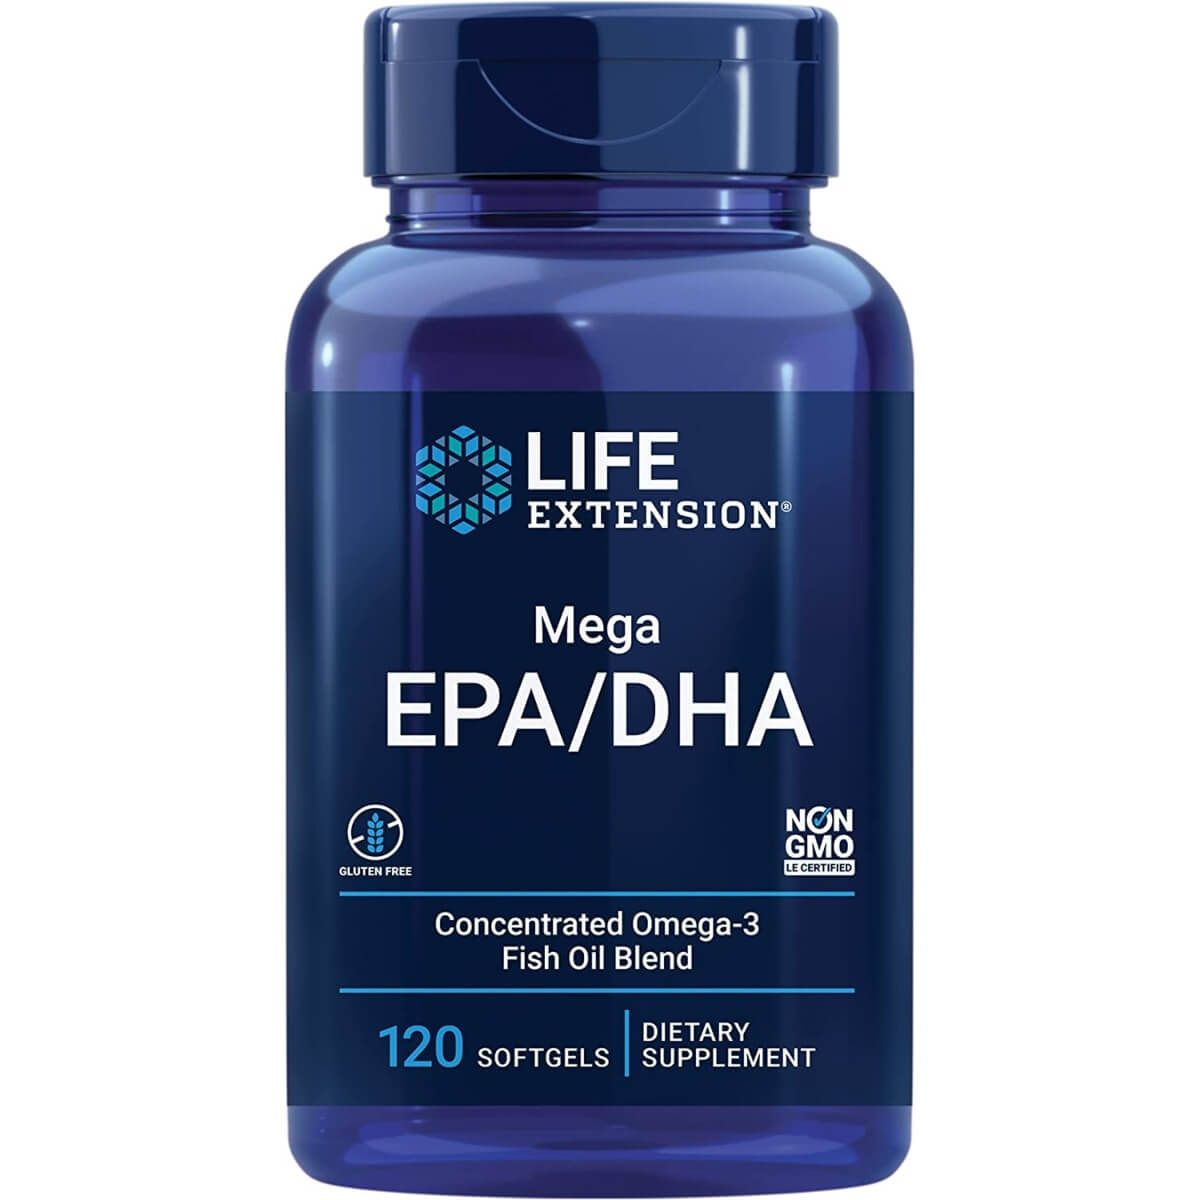 Photos - Vitamins & Minerals Life Extension Mega EPA/DHA 120 Softgels PBW-P35757 